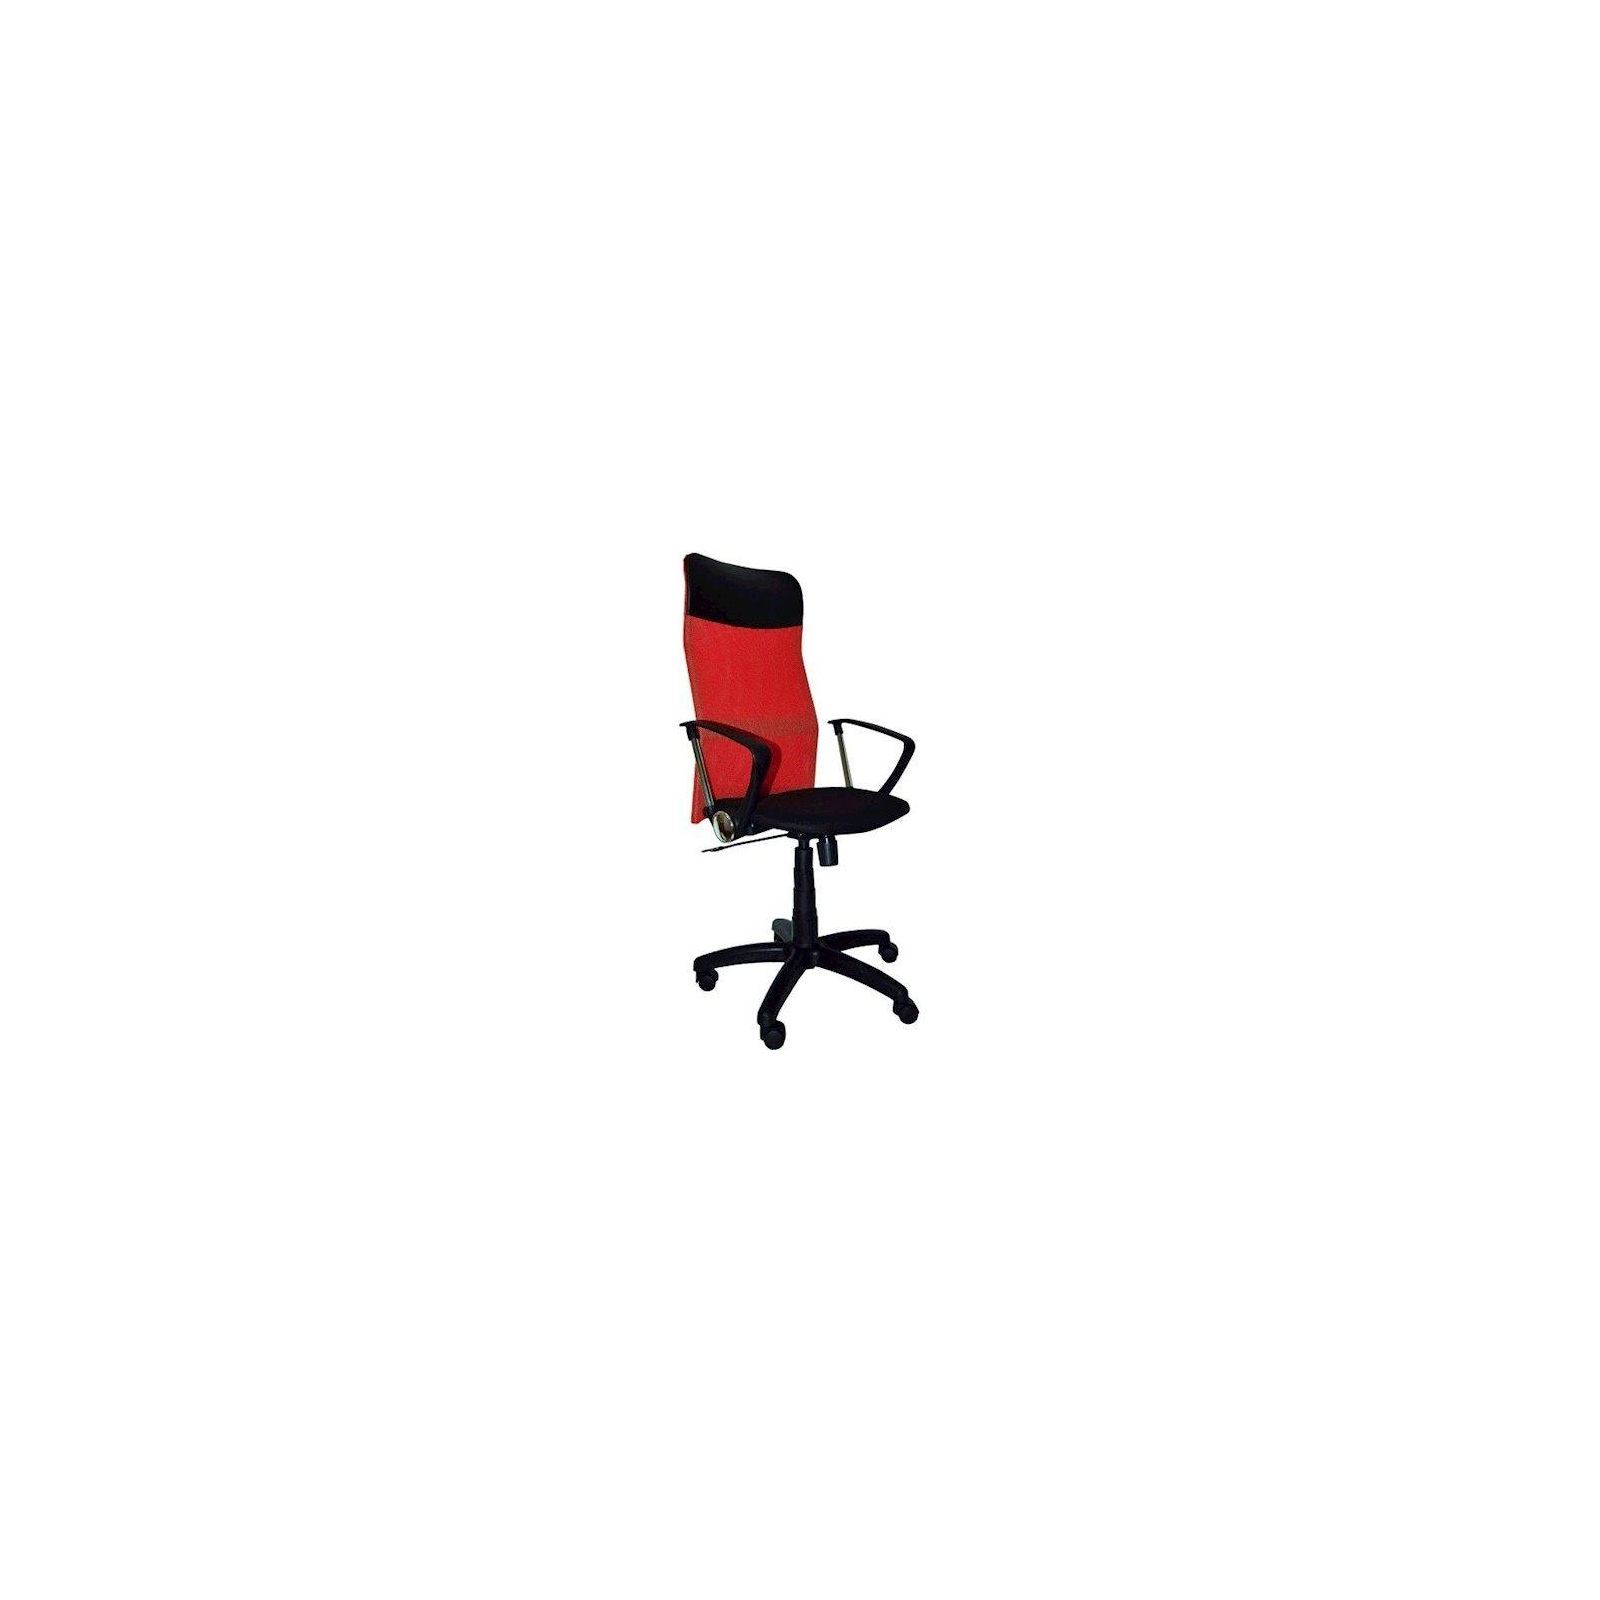 Офисное кресло Примтекс плюс Ultra Chrome M-35